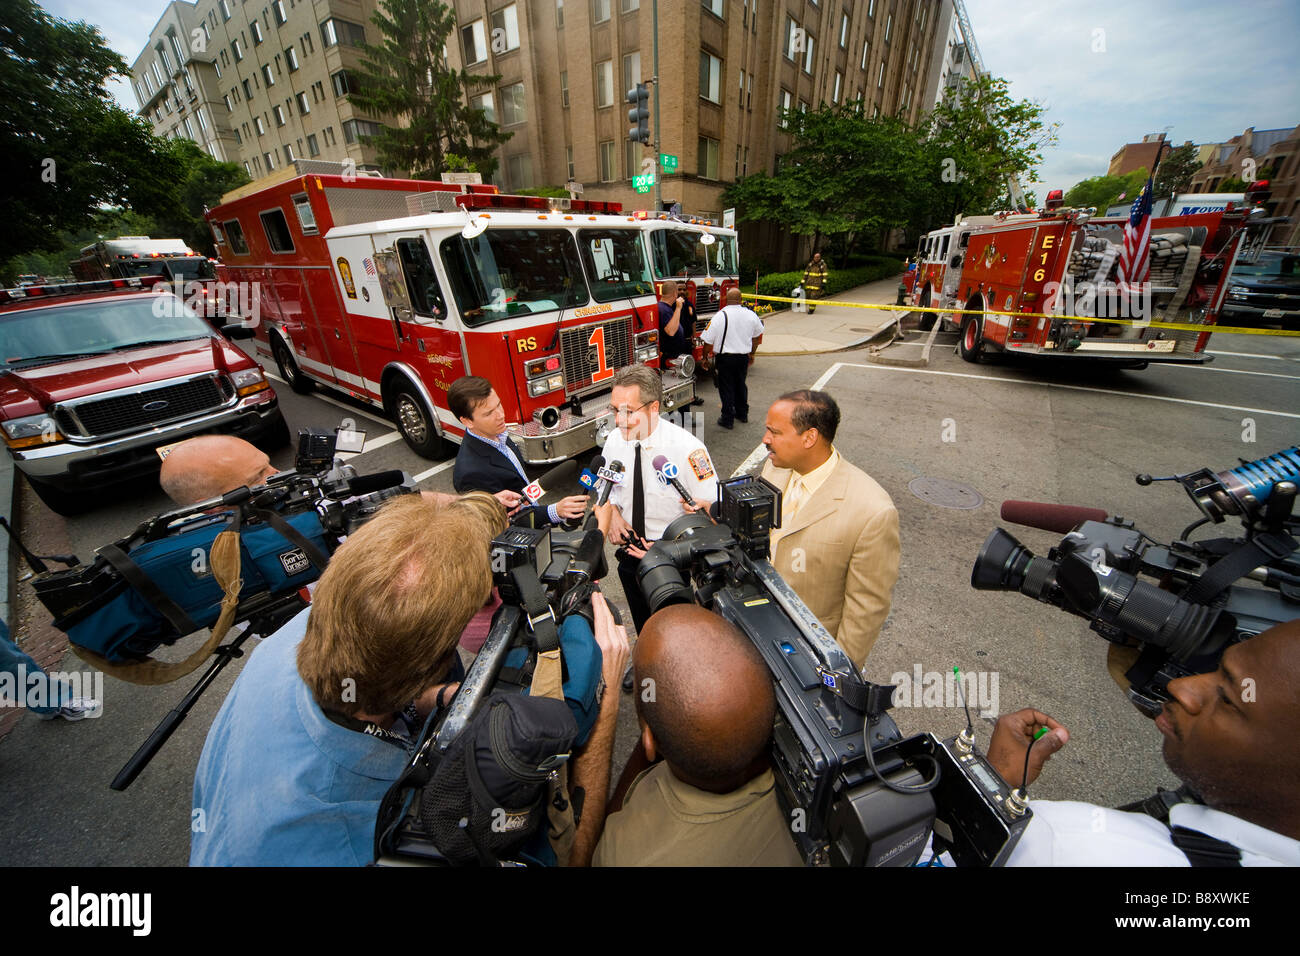 TV news team catturare un portavoce per la DC dei Vigili del Fuoco. Incendio in Foggy Bottom, 20 & F NW Washington DC. Maggio 2006. Foto Stock